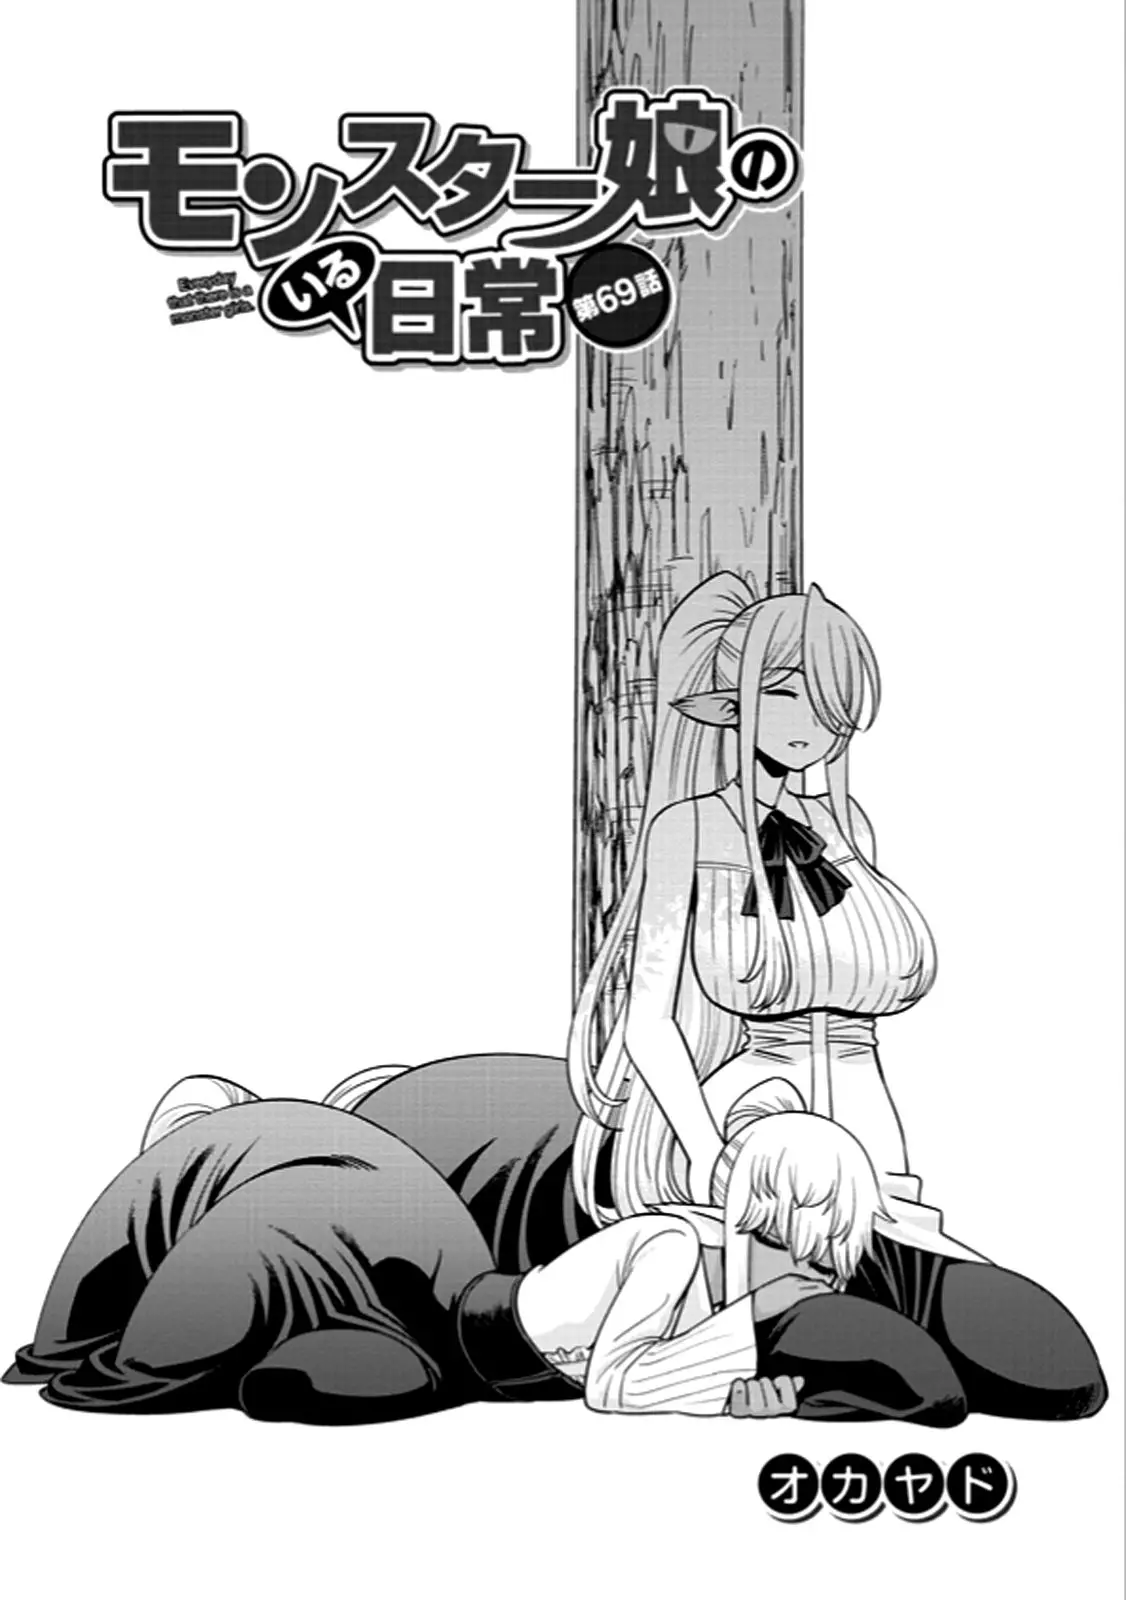 Monster Musume no Iru Nichijou - 69 page 1